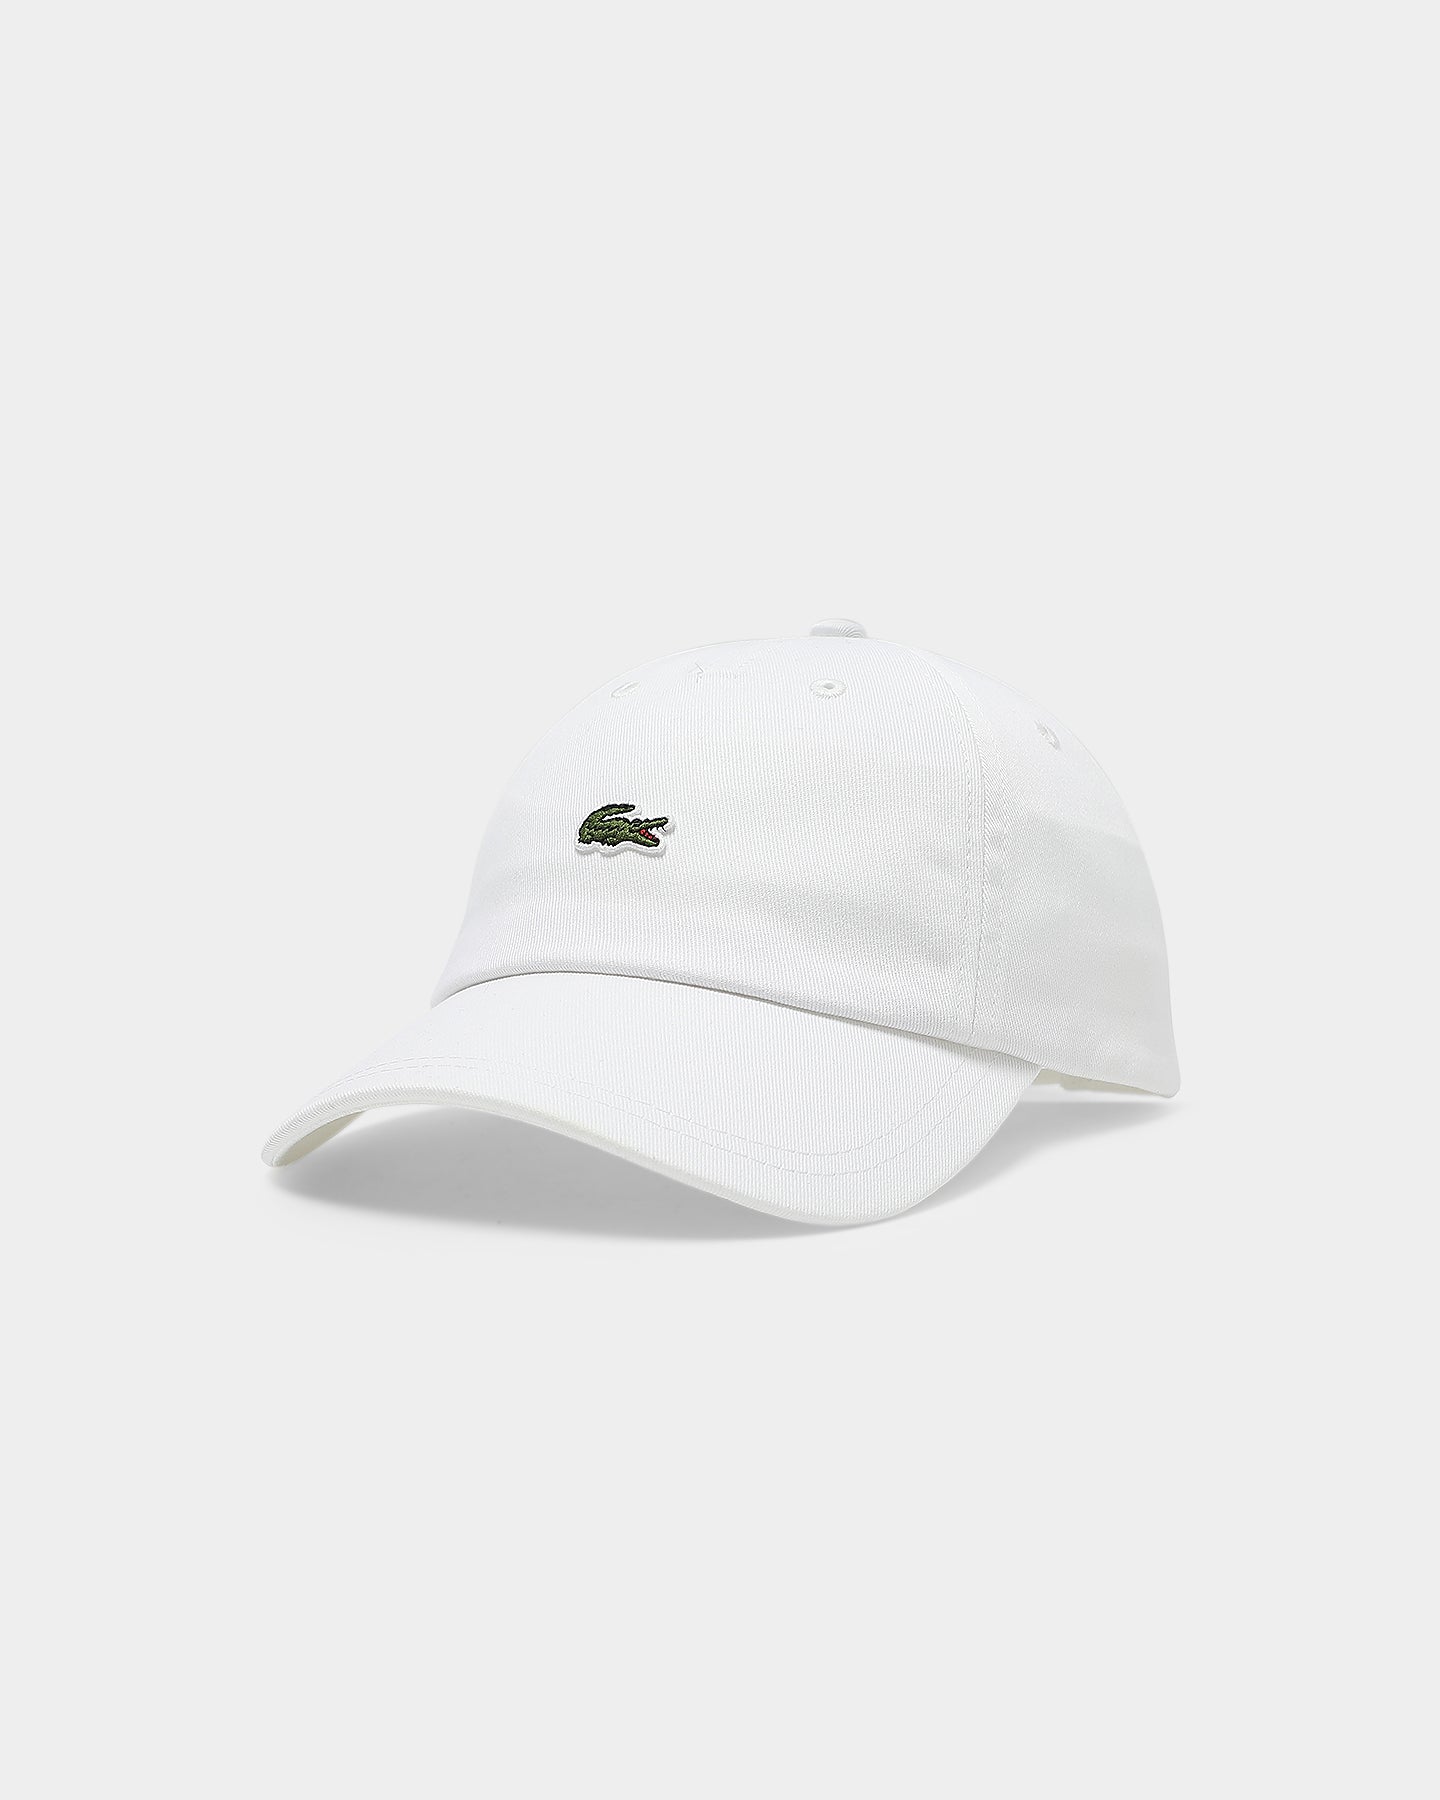 lacoste white cap